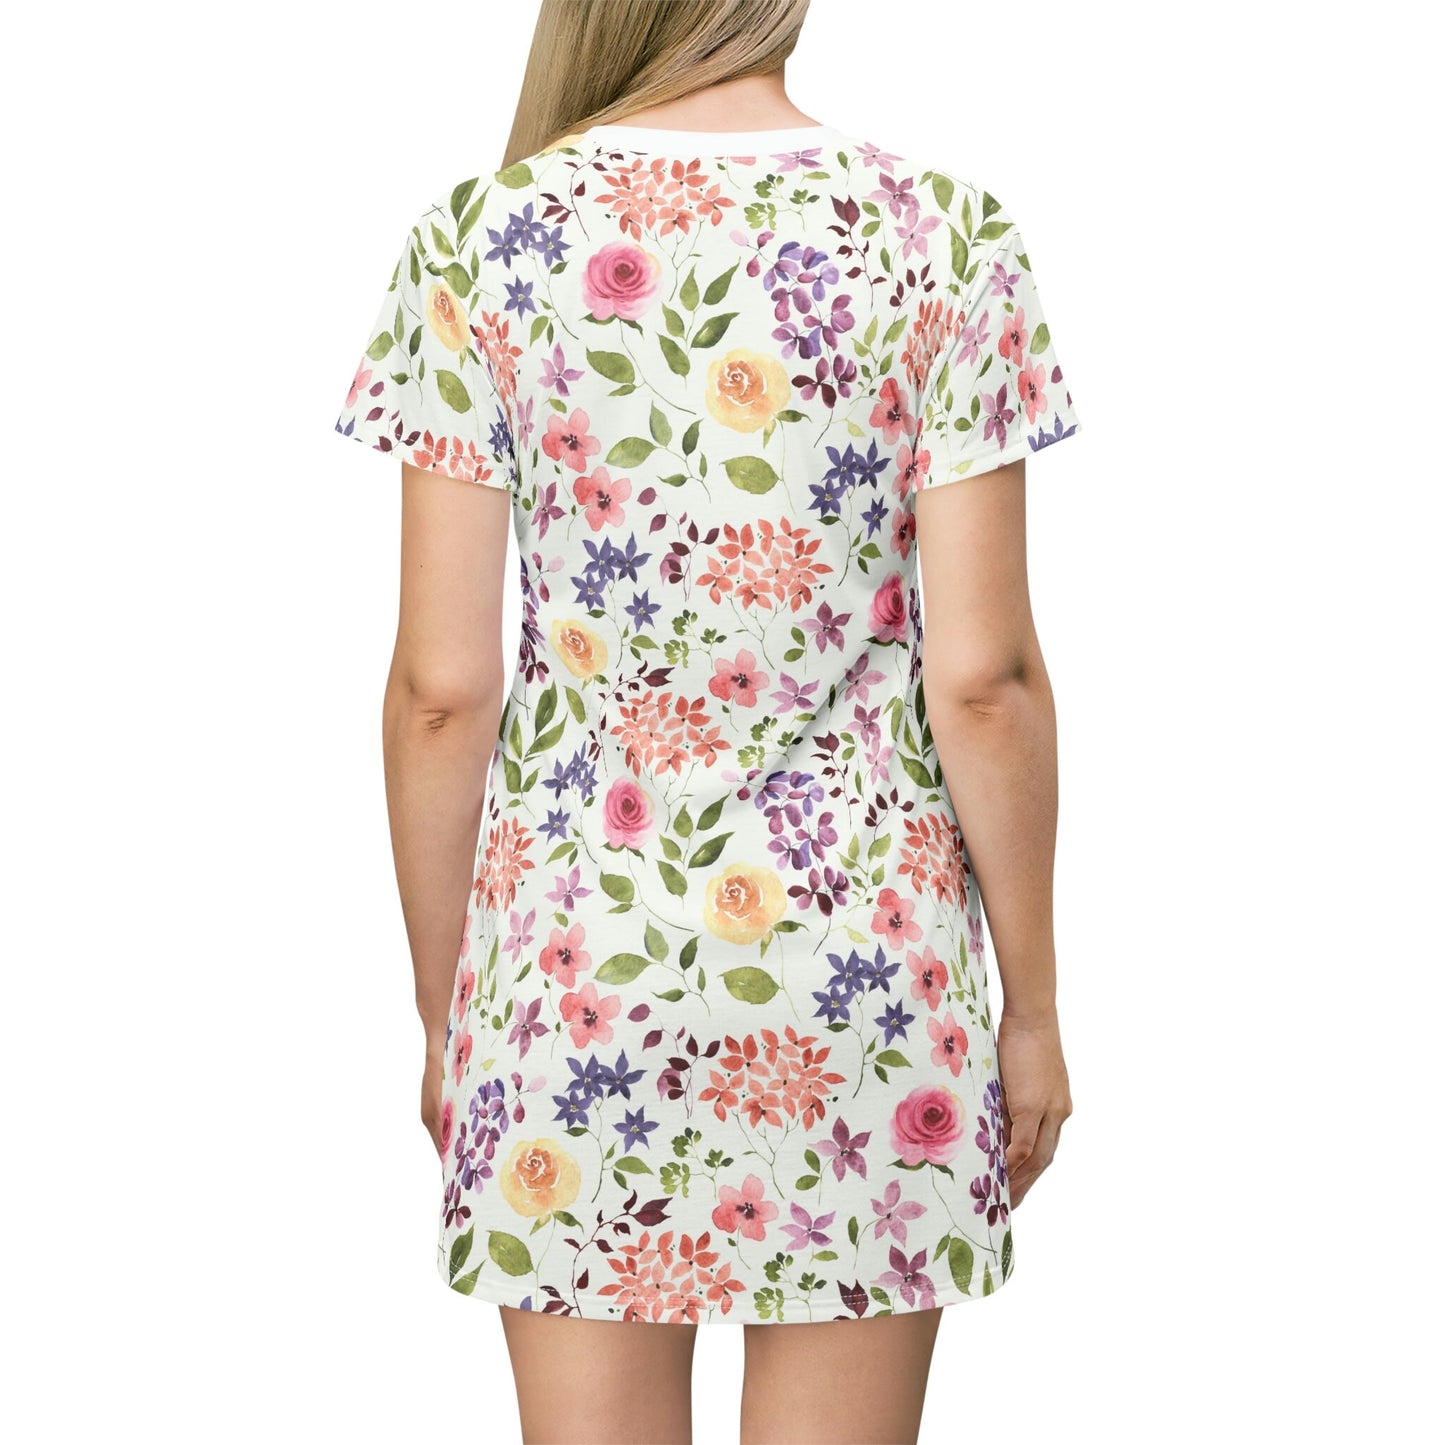 T-Shirt Dress - Multicolor Floral